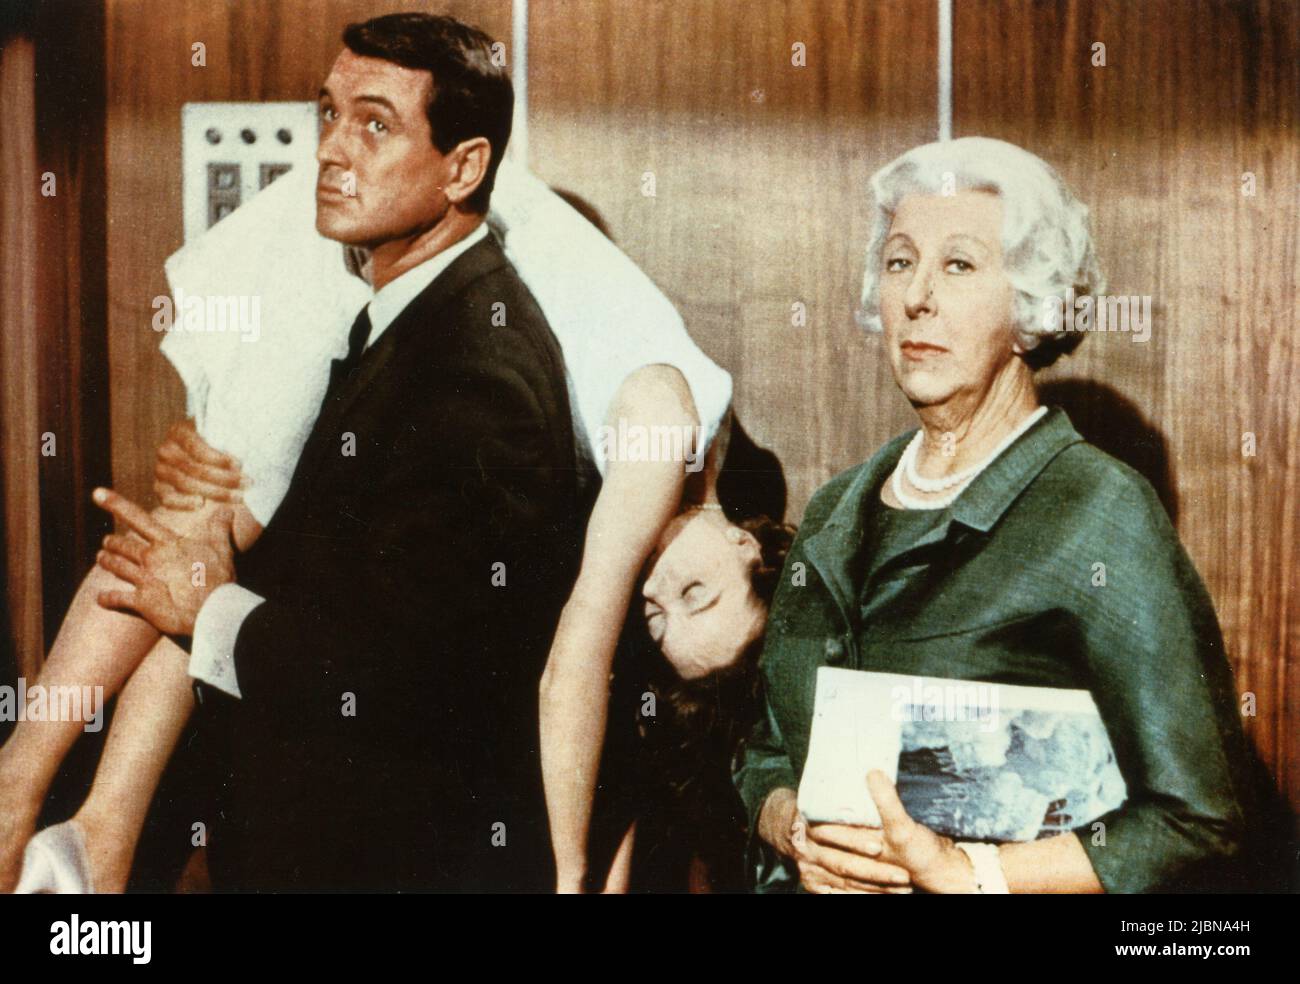 L'attore americano Rock Hudson, e le attrici Leslie Caron e norma Varden nel film A Very Special Favor, USA 1965 Foto Stock